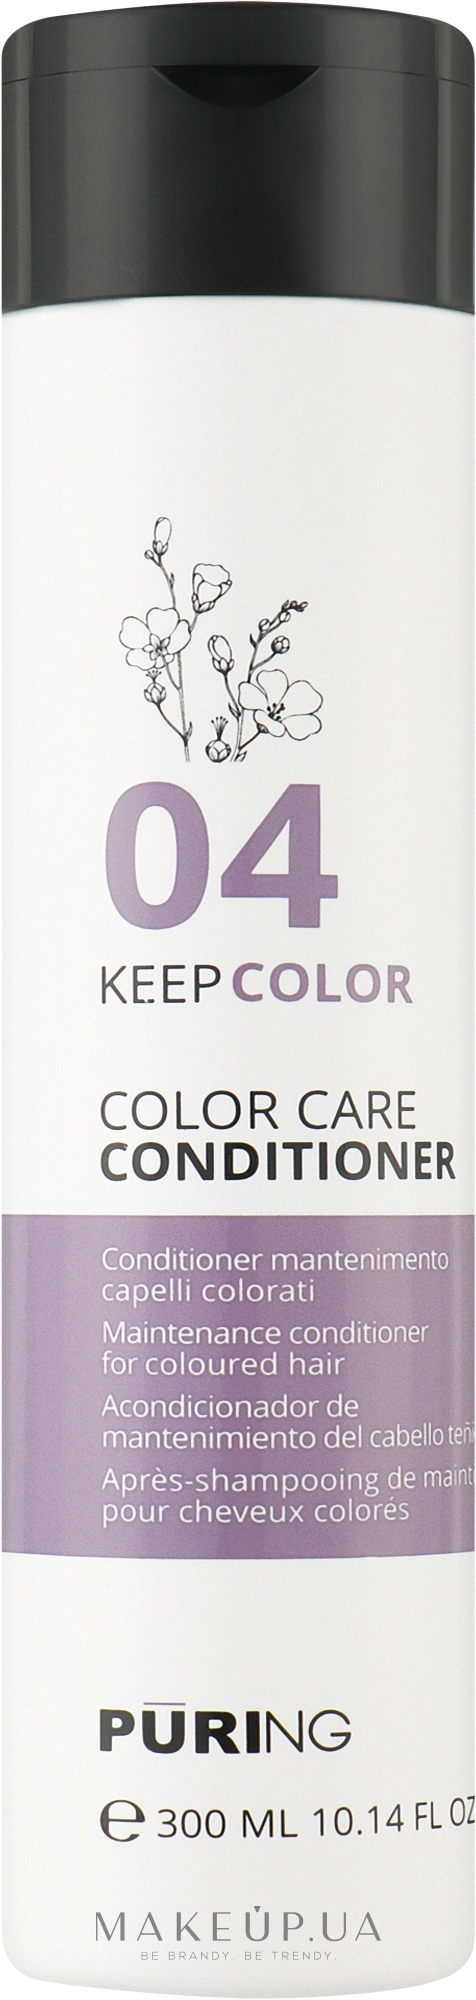 Кондиционер для поддержания цвета окрашенных волос - Puring Keepcolor Color Care Conditioner — фото 300ml